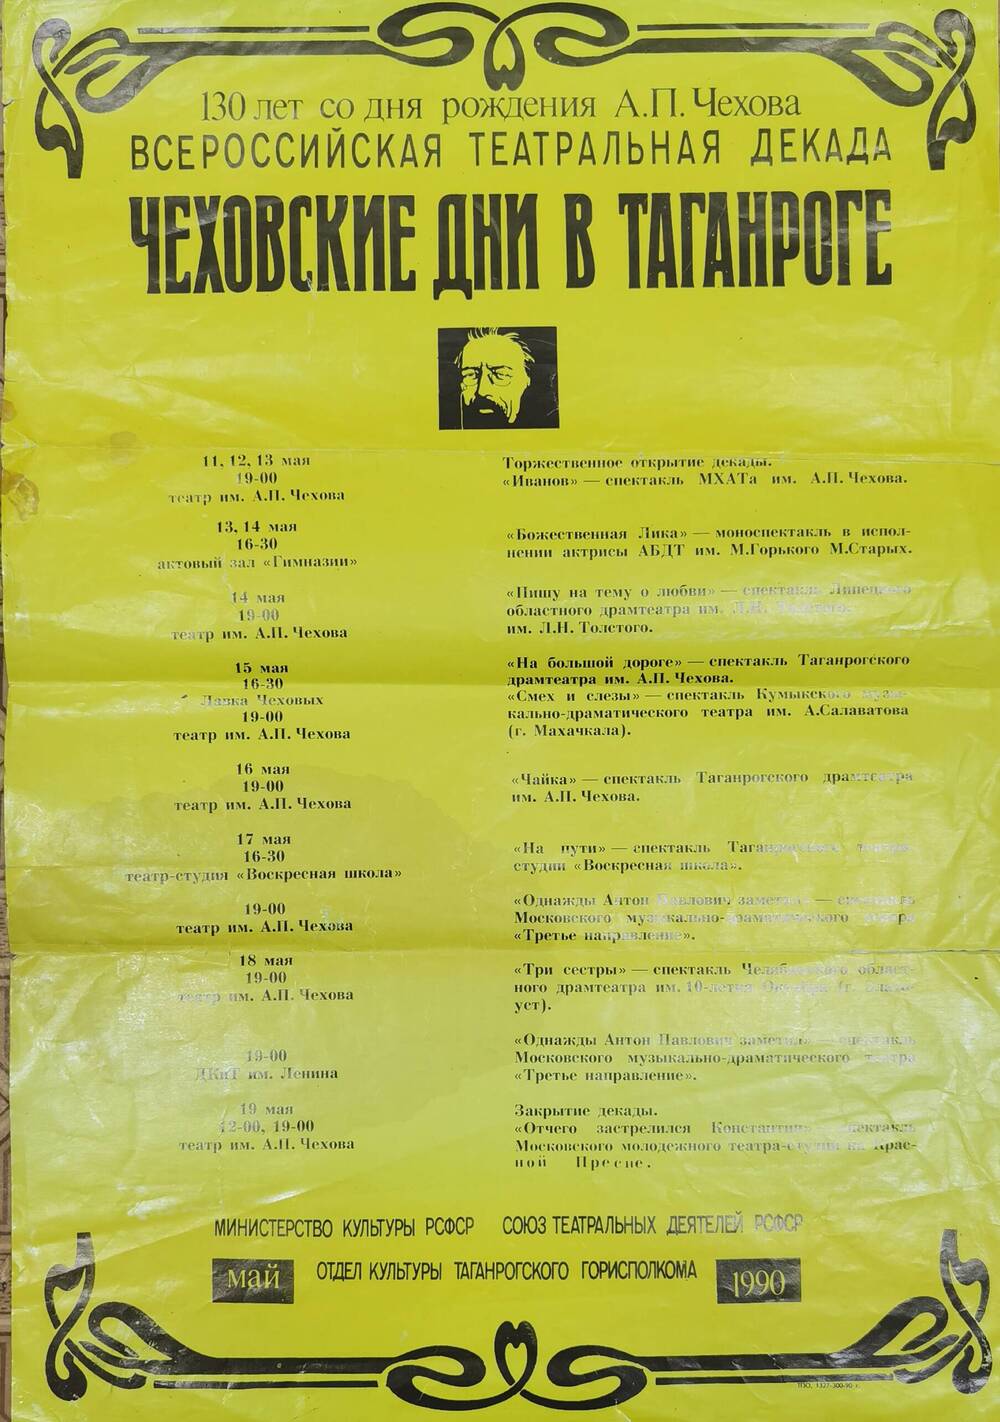 Афиша Чеховские дни в Таганроге, 1990 г.